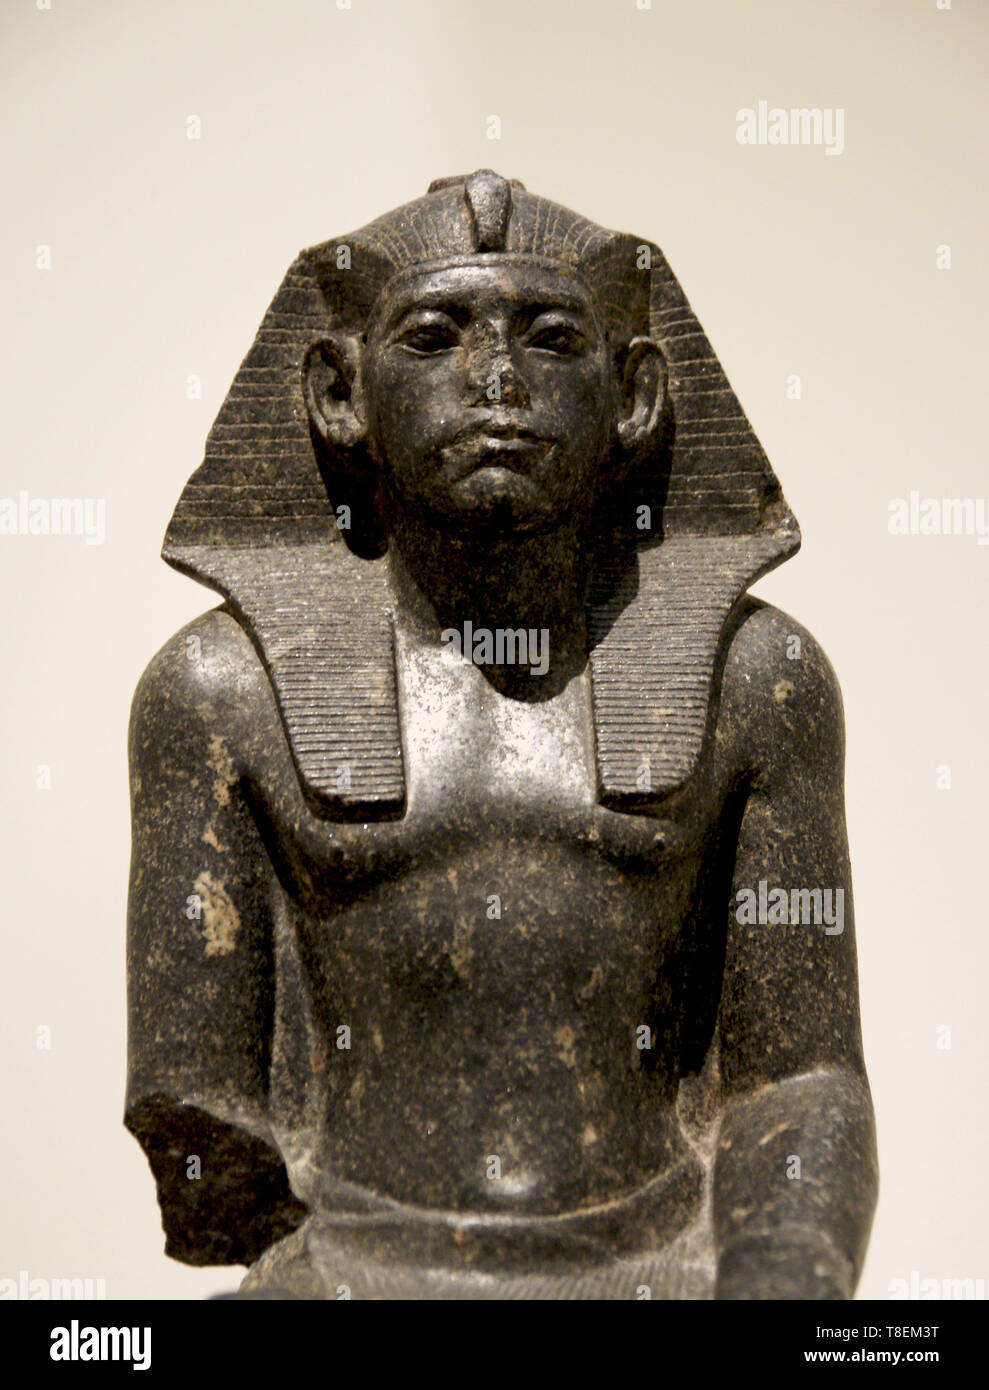 Ritratto di Amenemhat III, re d'Egitto (1853-1806 a.C.). Medio Regno, XII dinastia. Il granito nero (1850-1800 a.C.). Hermitage. Foto Stock